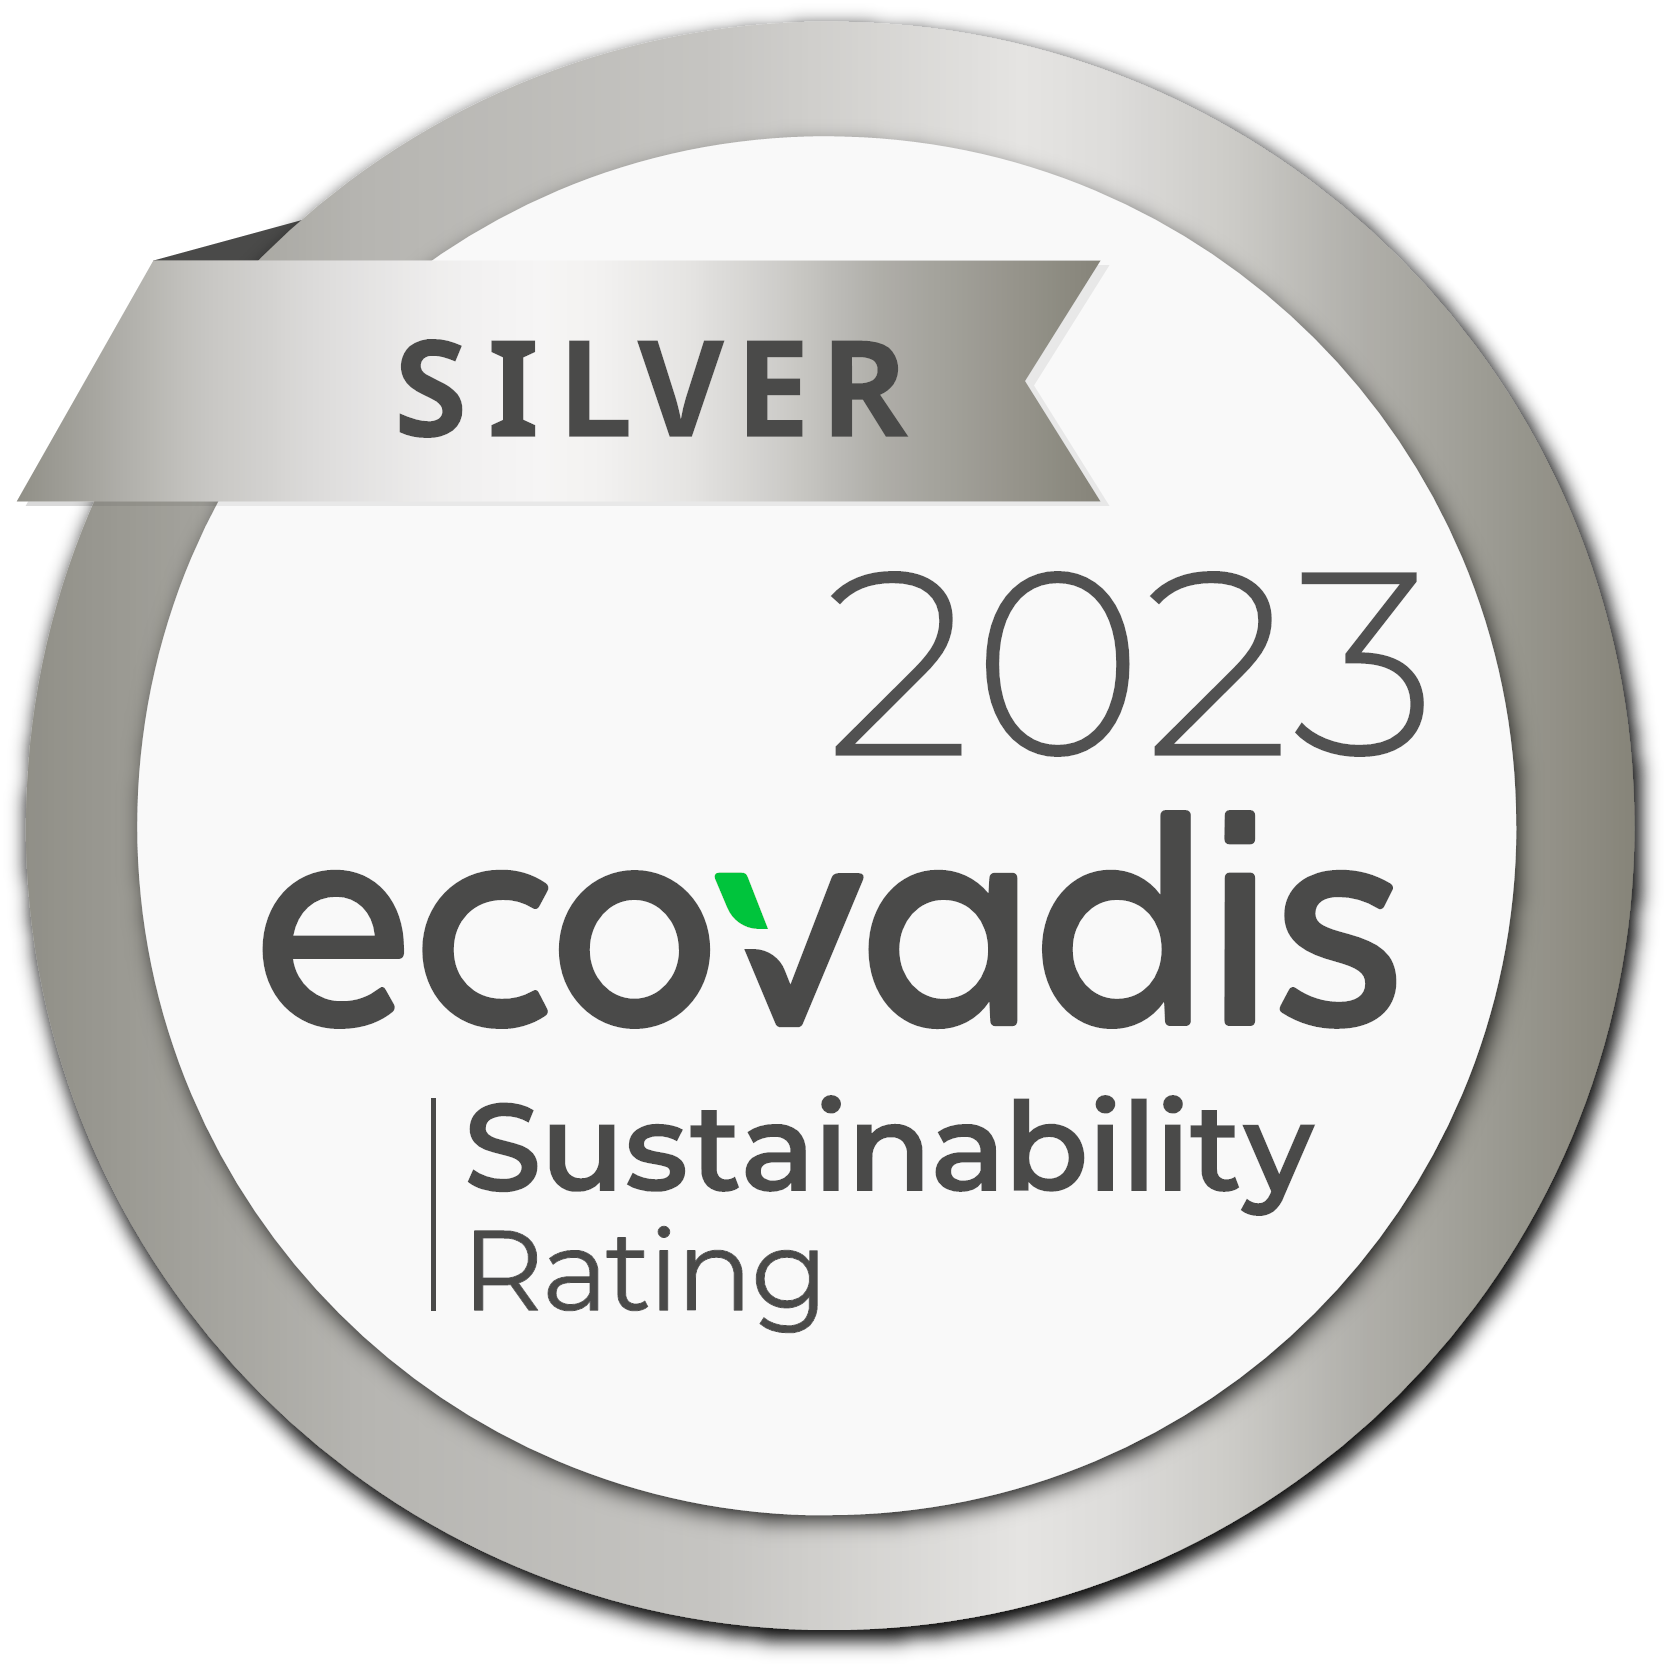 Ecovadis sustainability 2023